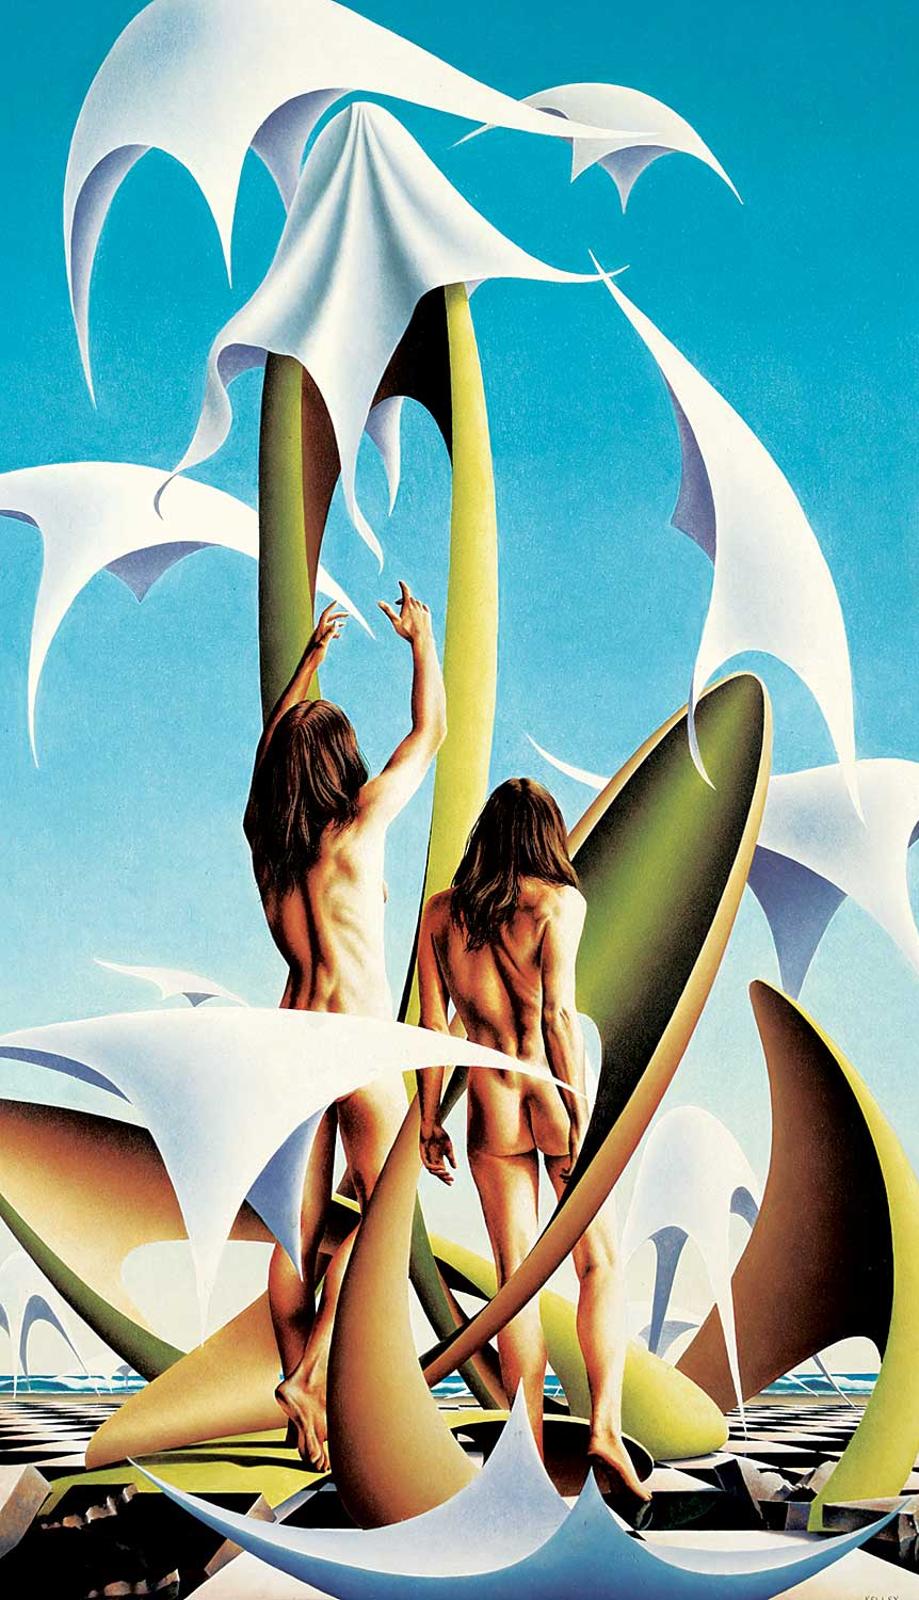 Paul Kelley (1955) - Untitled - Kites